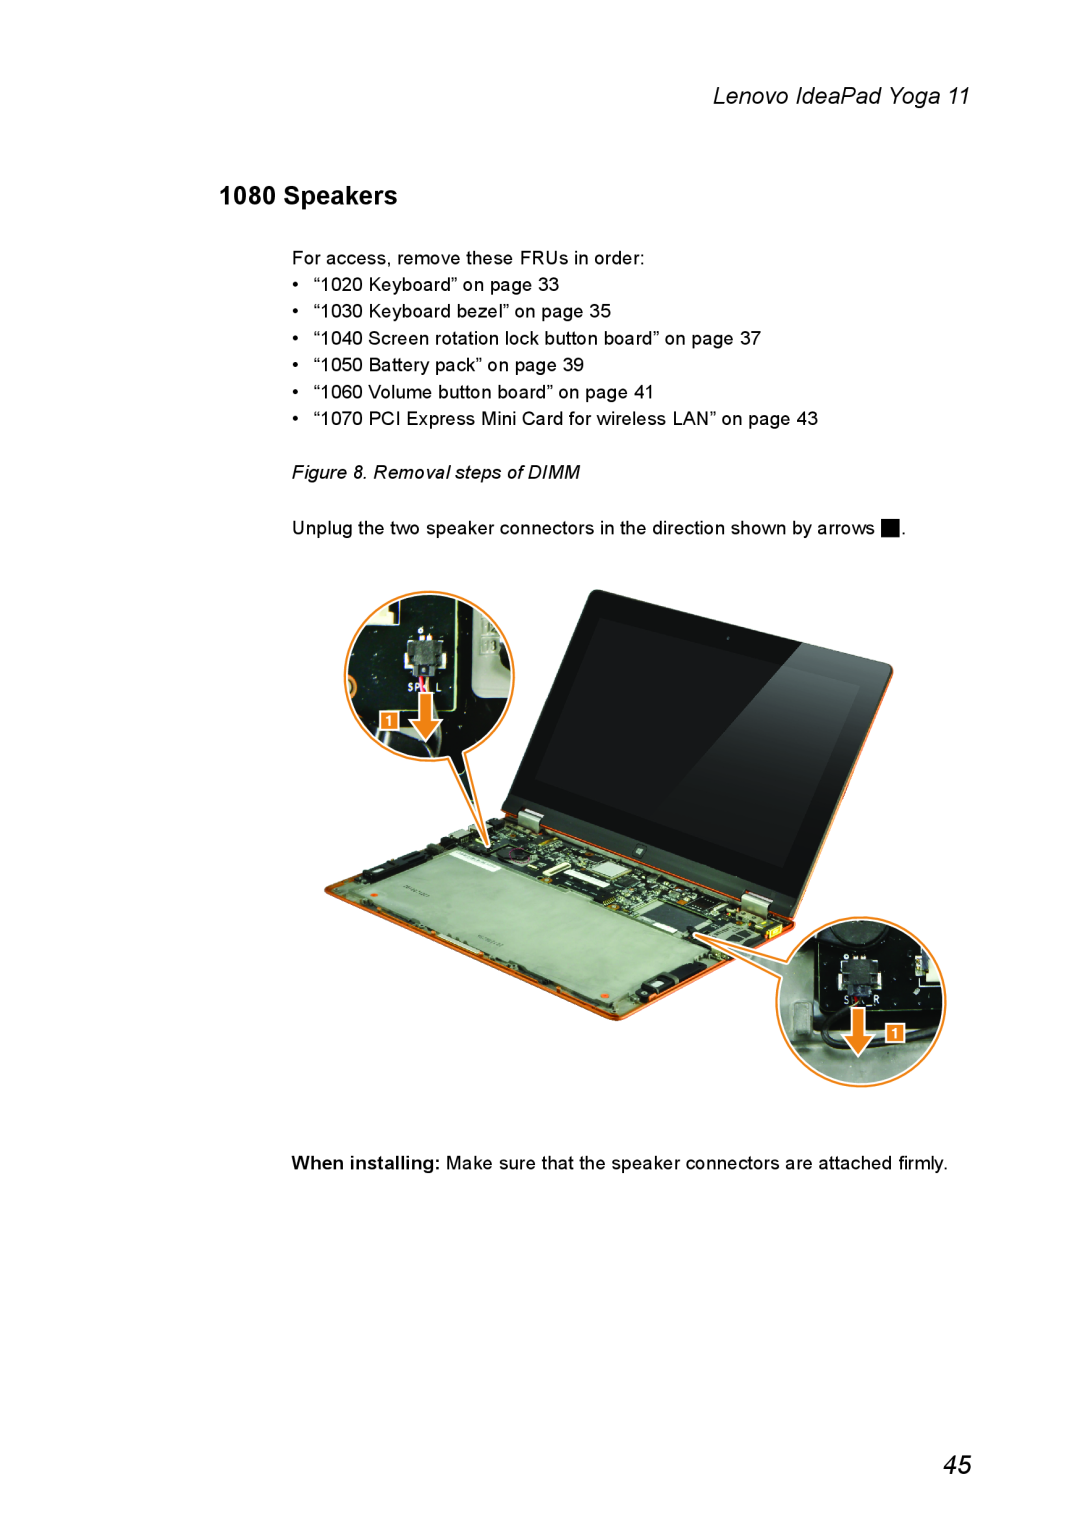 Lenovo 11 manual Speakers, Removal steps of DIMM, Lenovo IdeaPad Yoga 